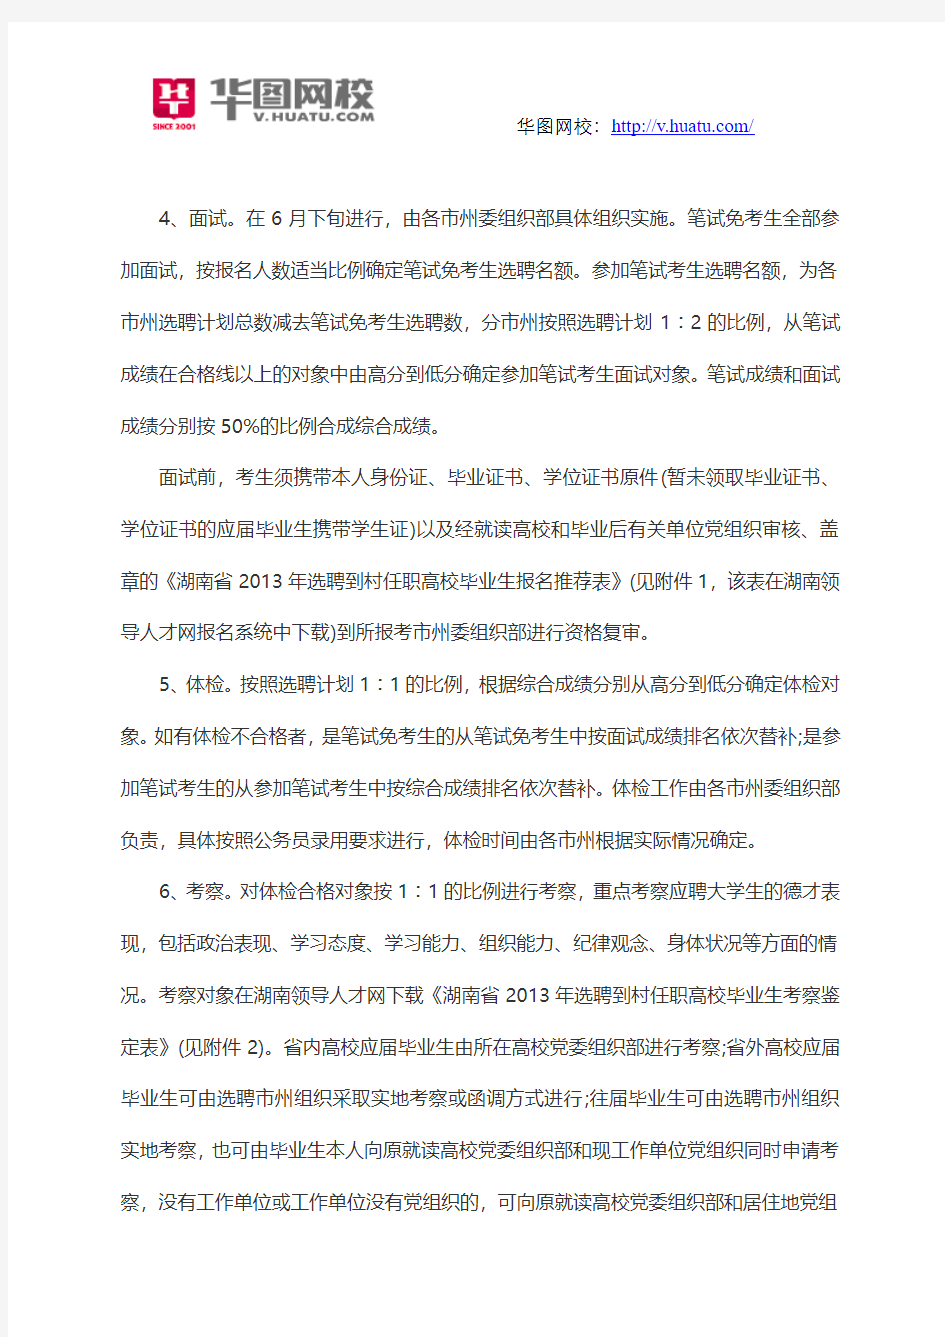 2015湖南省大学生村官招考公告和简章